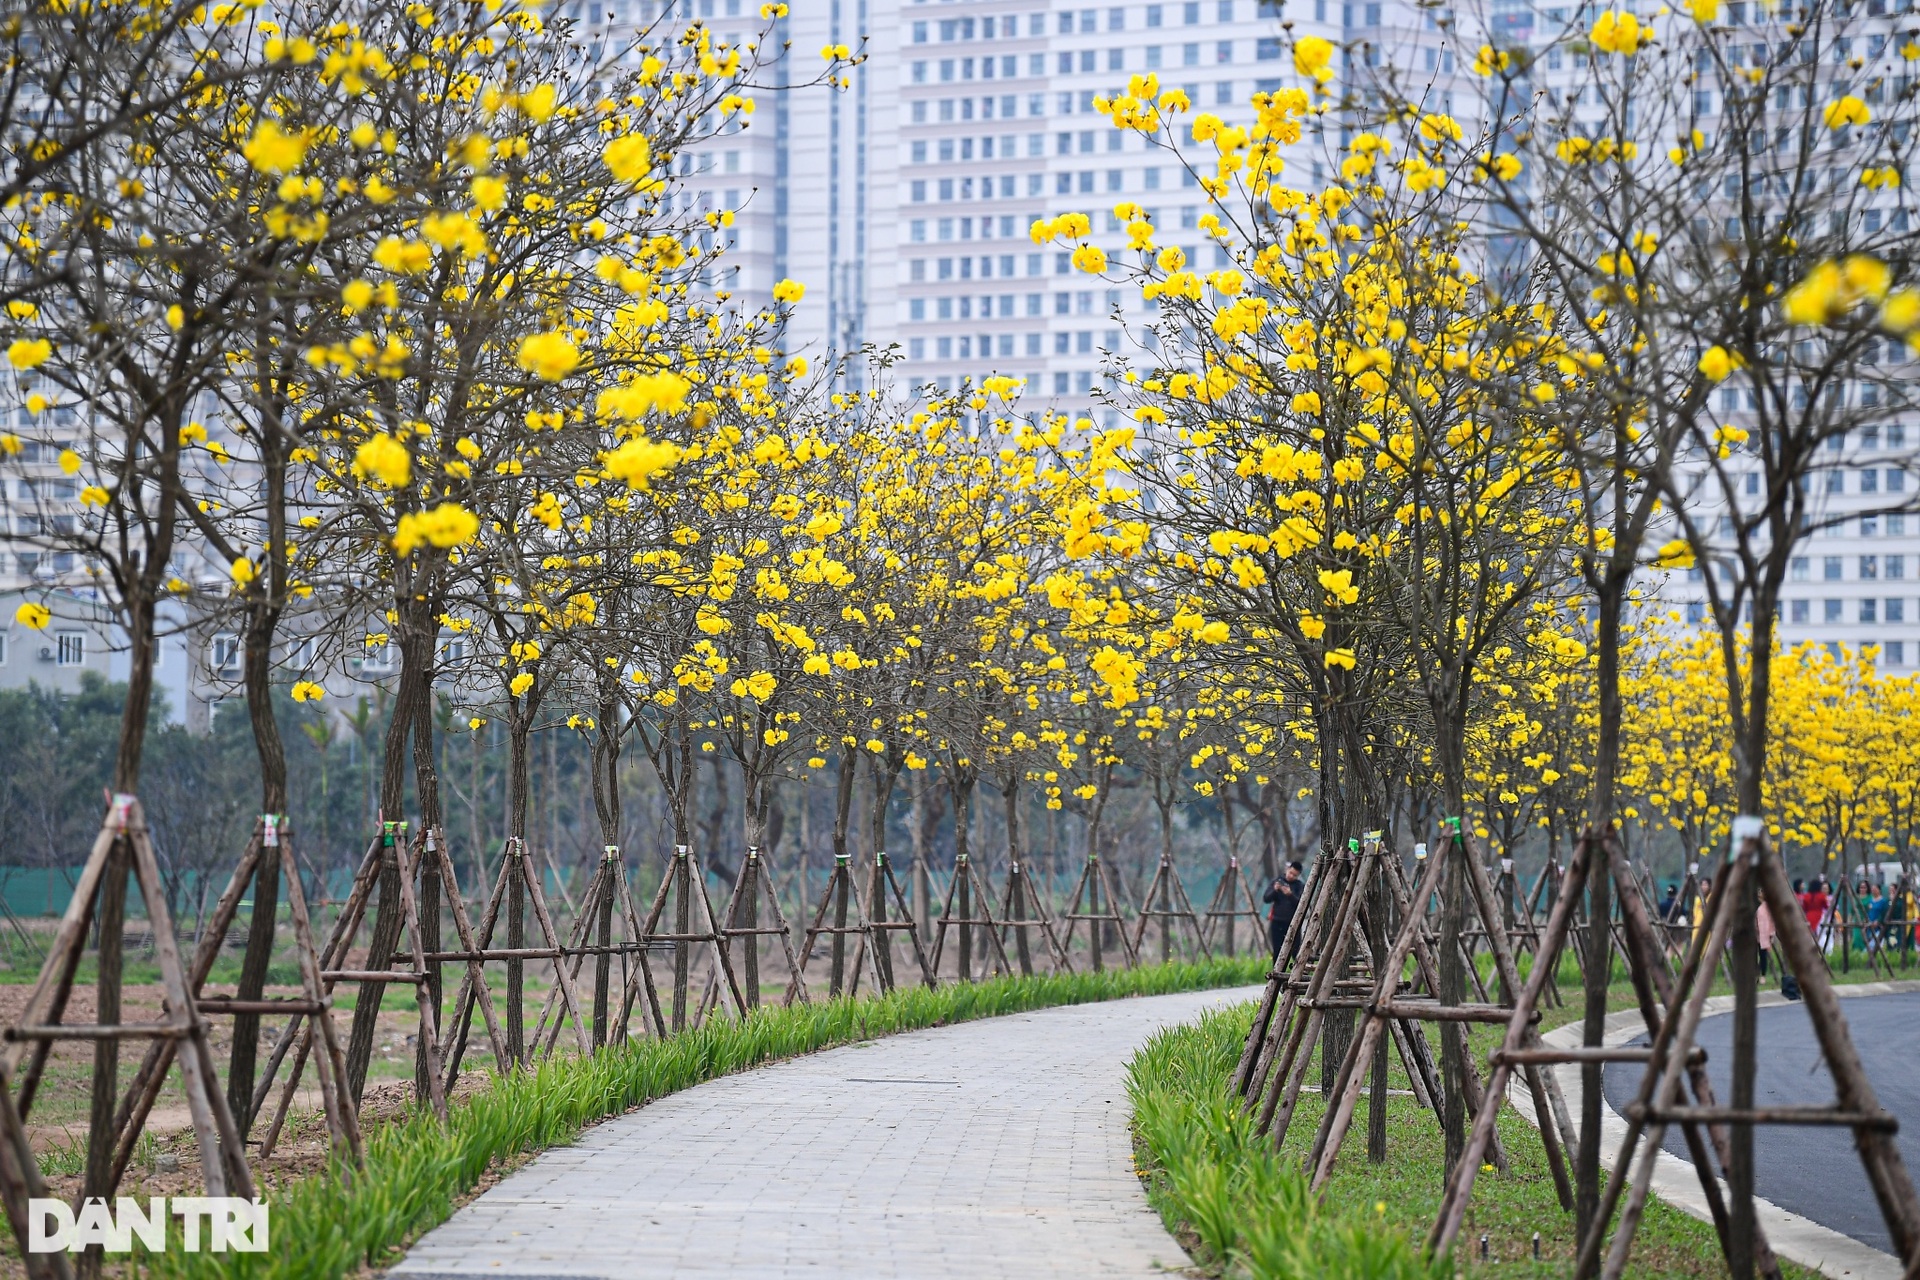 Cung đường hoa vàng nổi nhất Hà Nội thu hút đông người chụp ảnh, check-in - 1